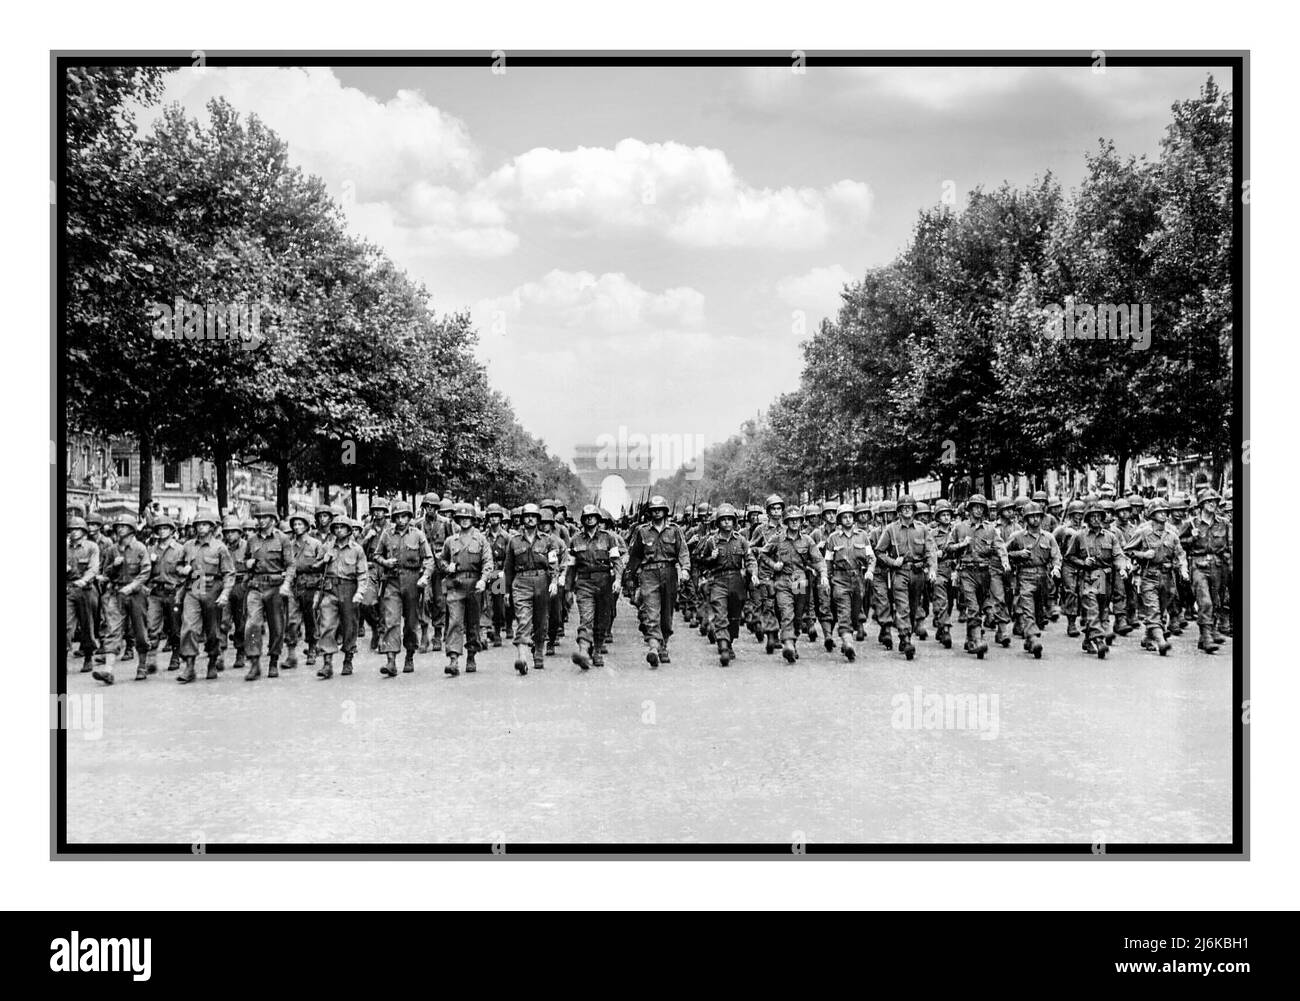 PARIS WW2 LIBÉRATION DE LA VICTOIRE ALLEMAGNE NAZIE les troupes américaines de la division d'infanterie 28th descendent l'avenue des champs-Élysées, Paris, dans la parade de la victoire. Date 29 août 1944 Banque D'Images